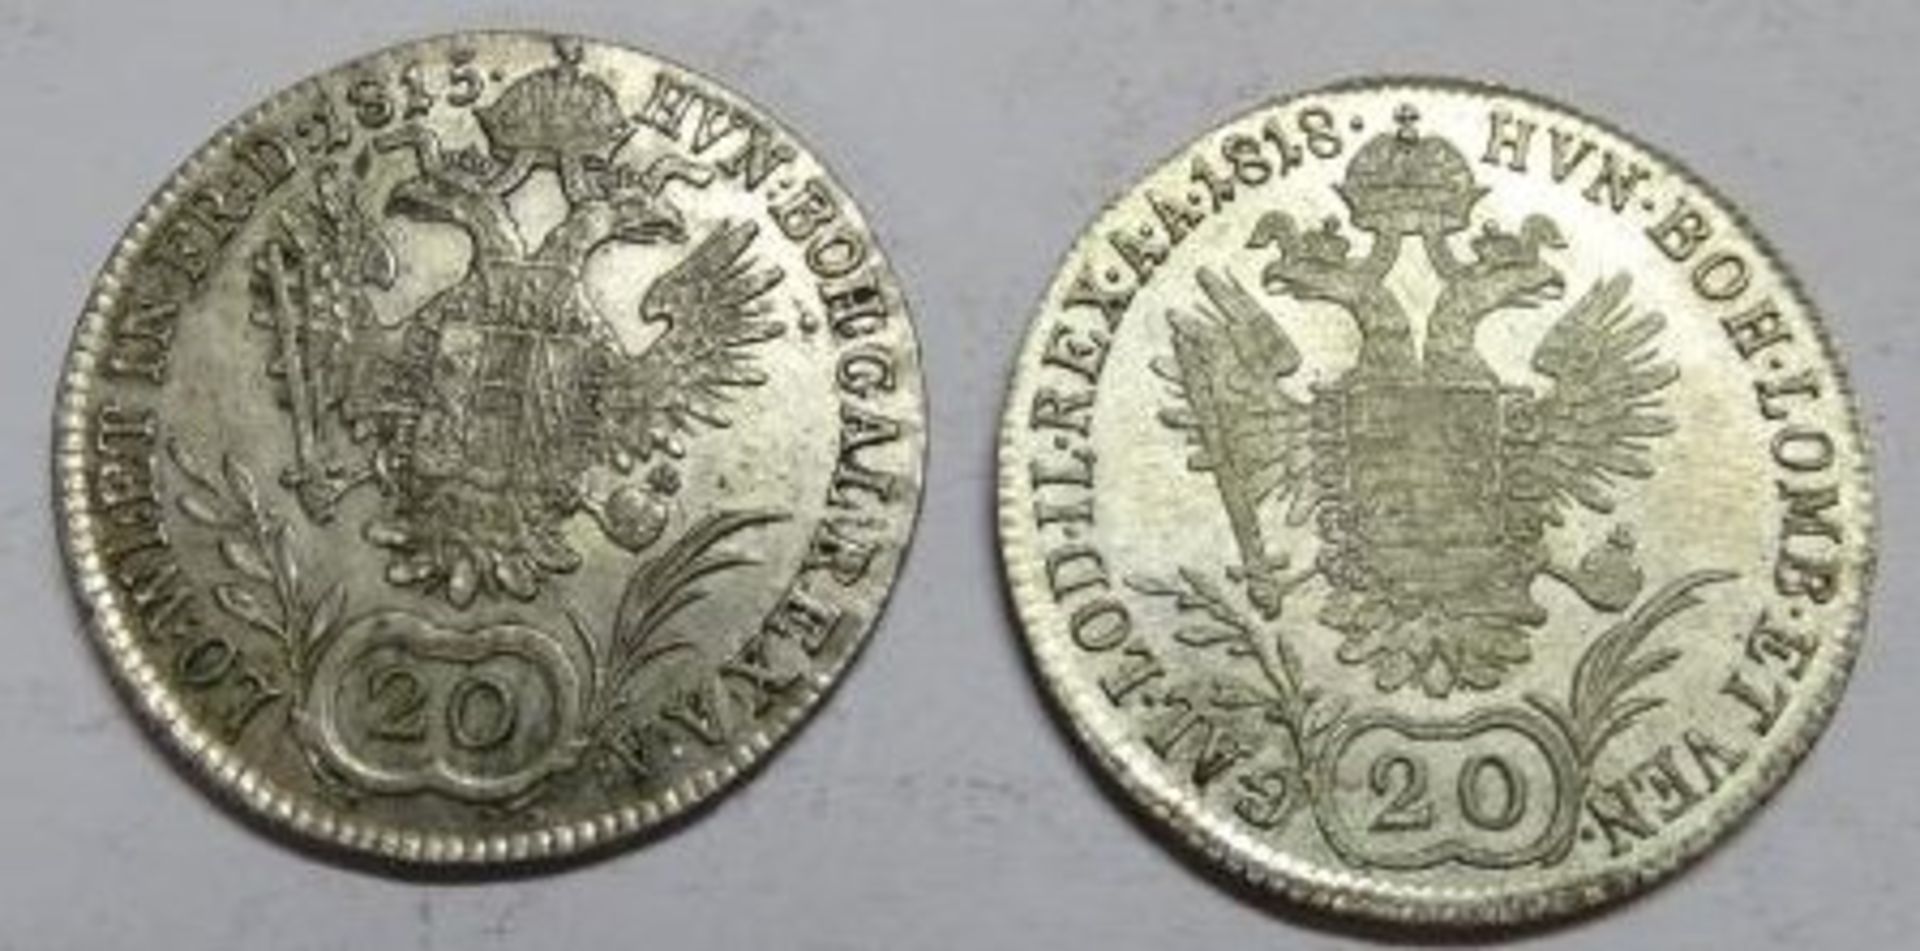 2 Silbermünzen, 1815, 1818 in Stempelglanz - ges. 13,25 gr